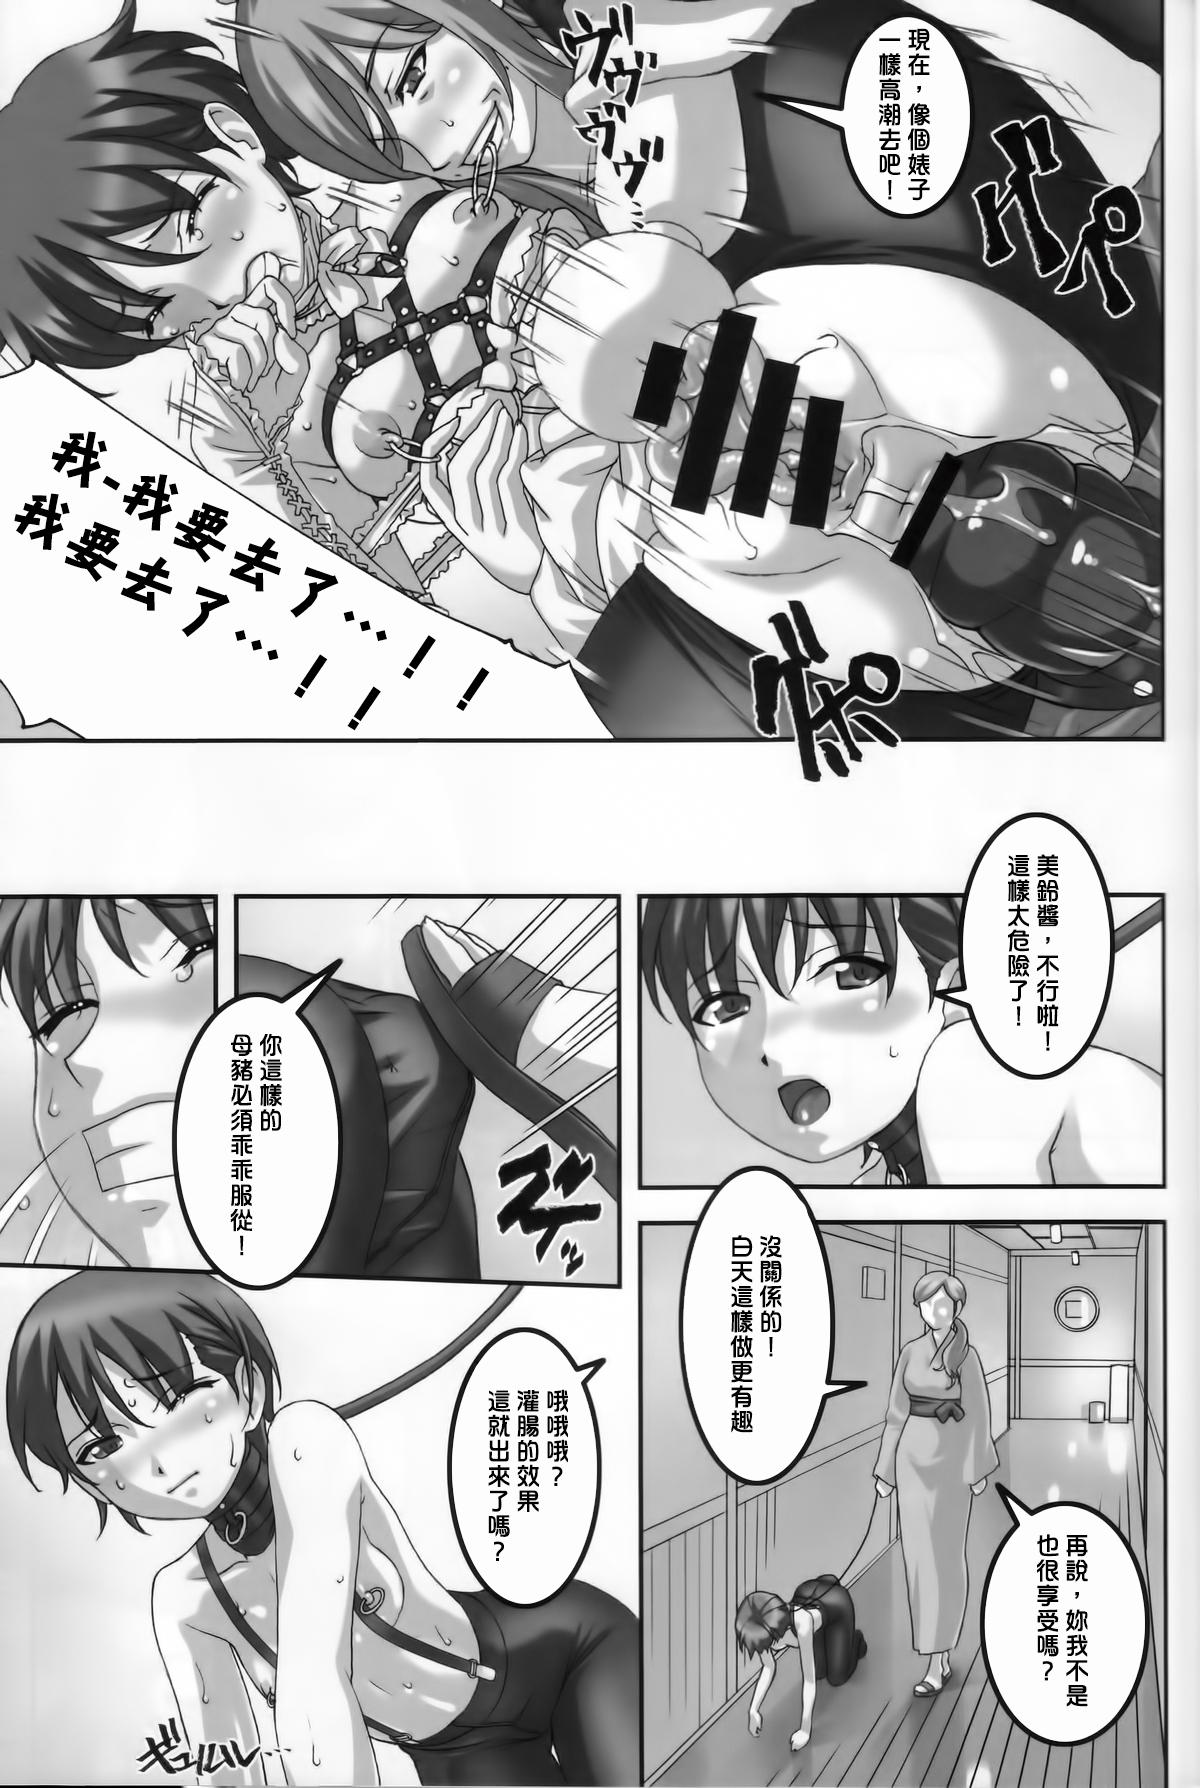 Anoko ga Natsuyasumi ni Ryokou saki de Oshiri no Ana wo Kizetsu suru hodo Naburare tsuzukeru Manga 16